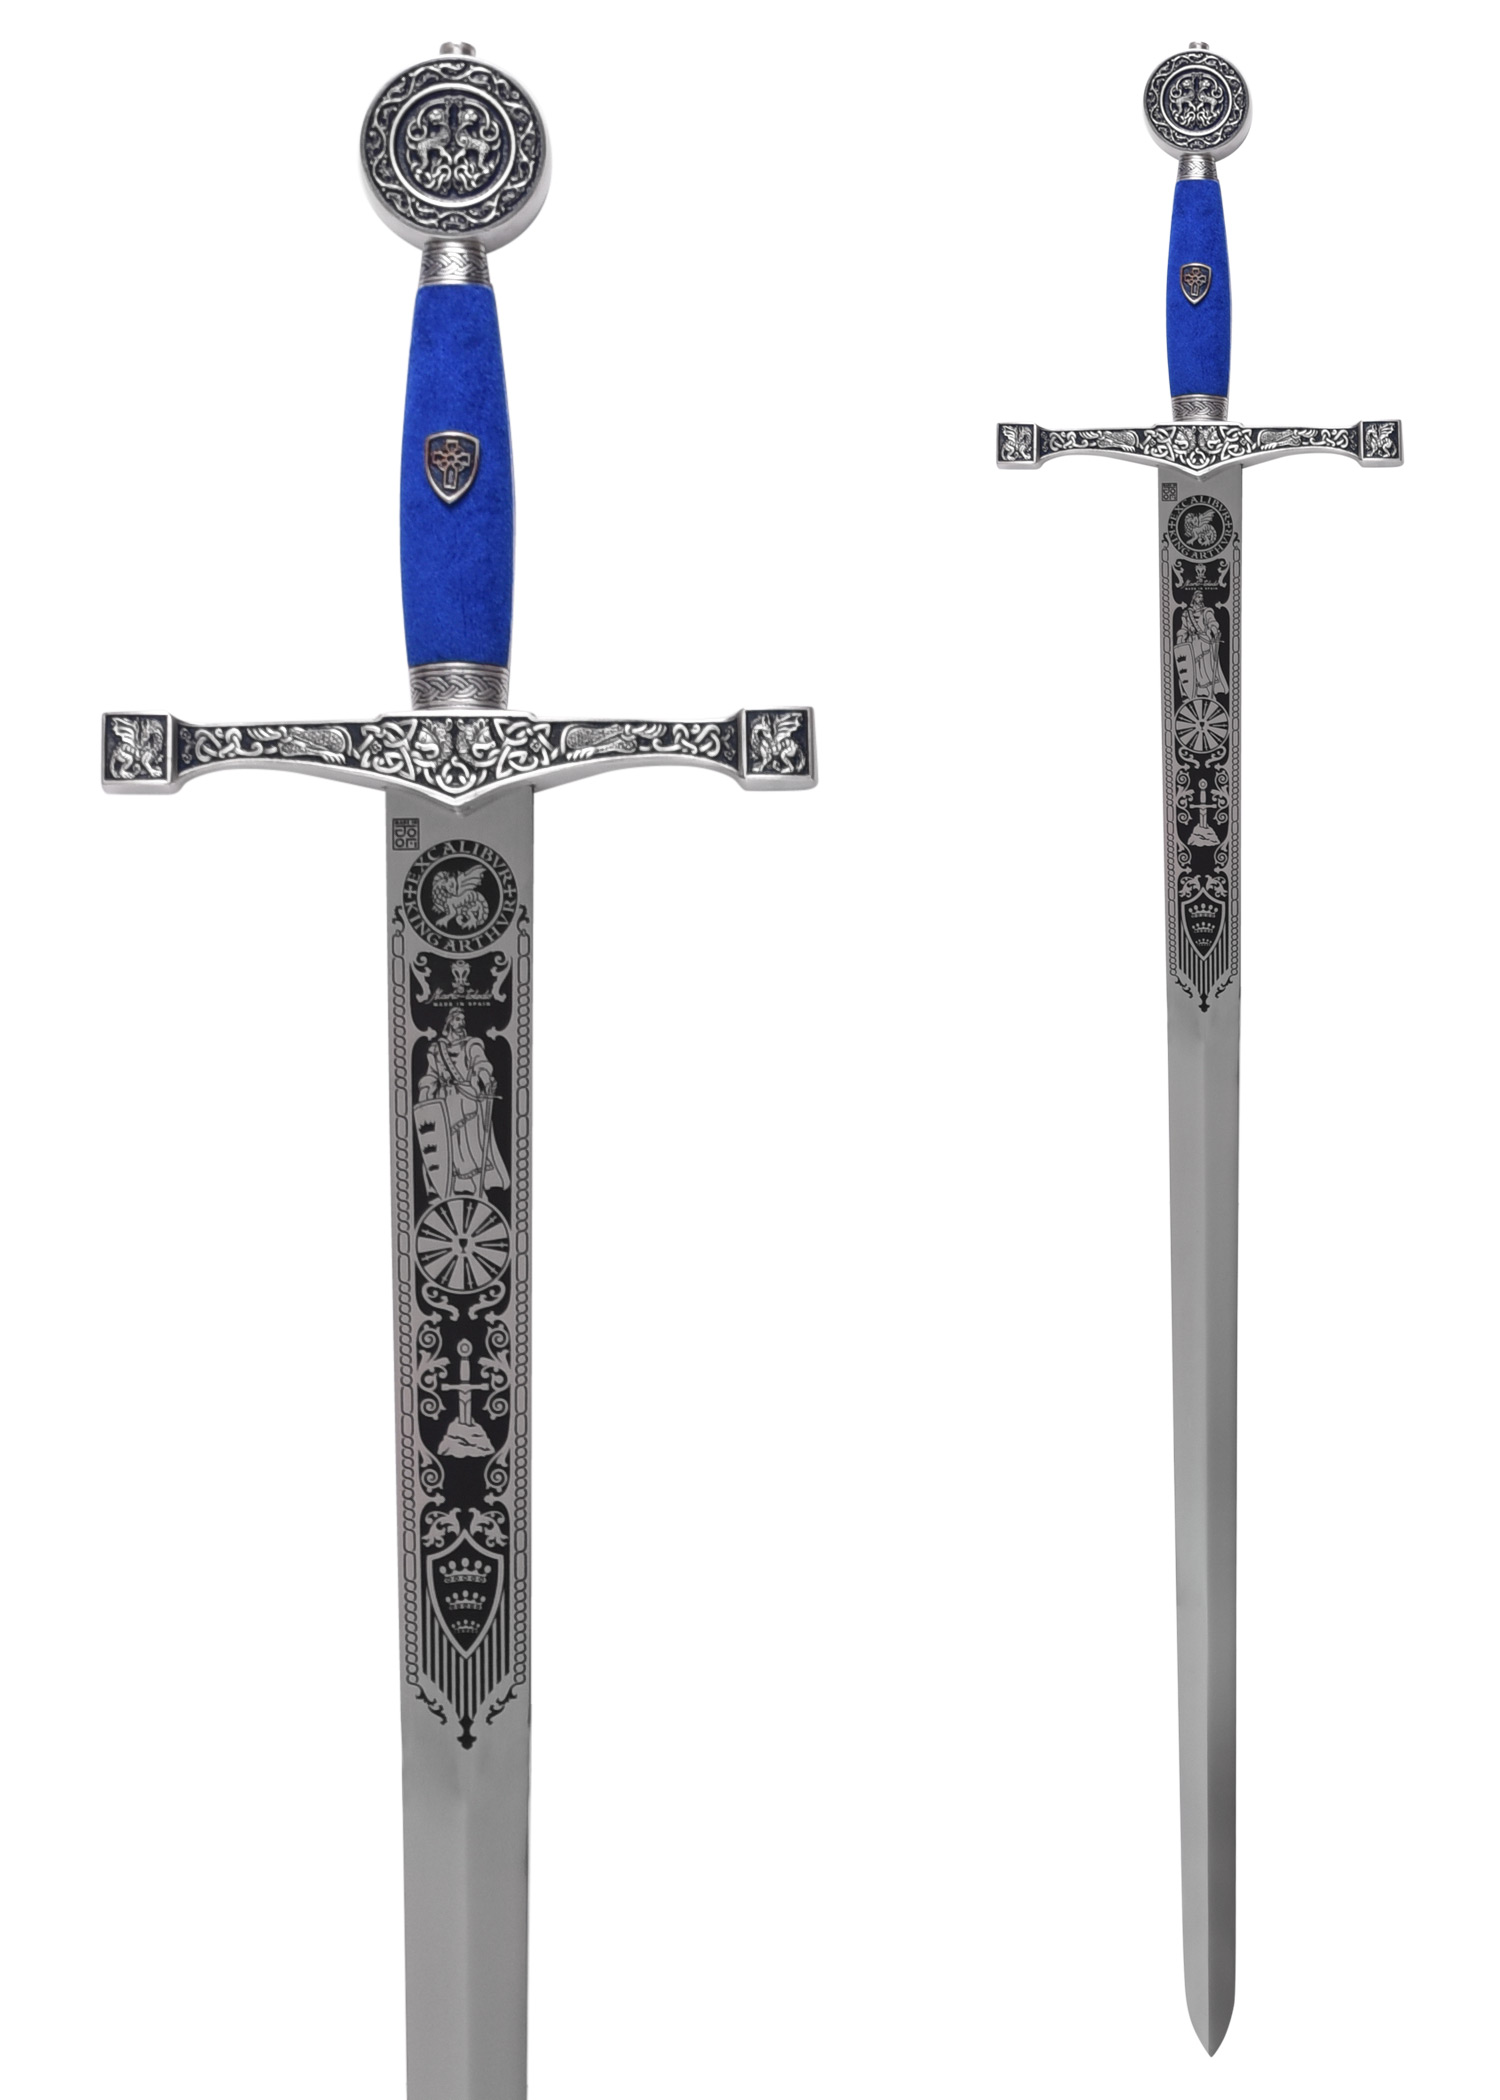 Schwert Excalibur, Silber/Blau, mit Zierätzung, Marto